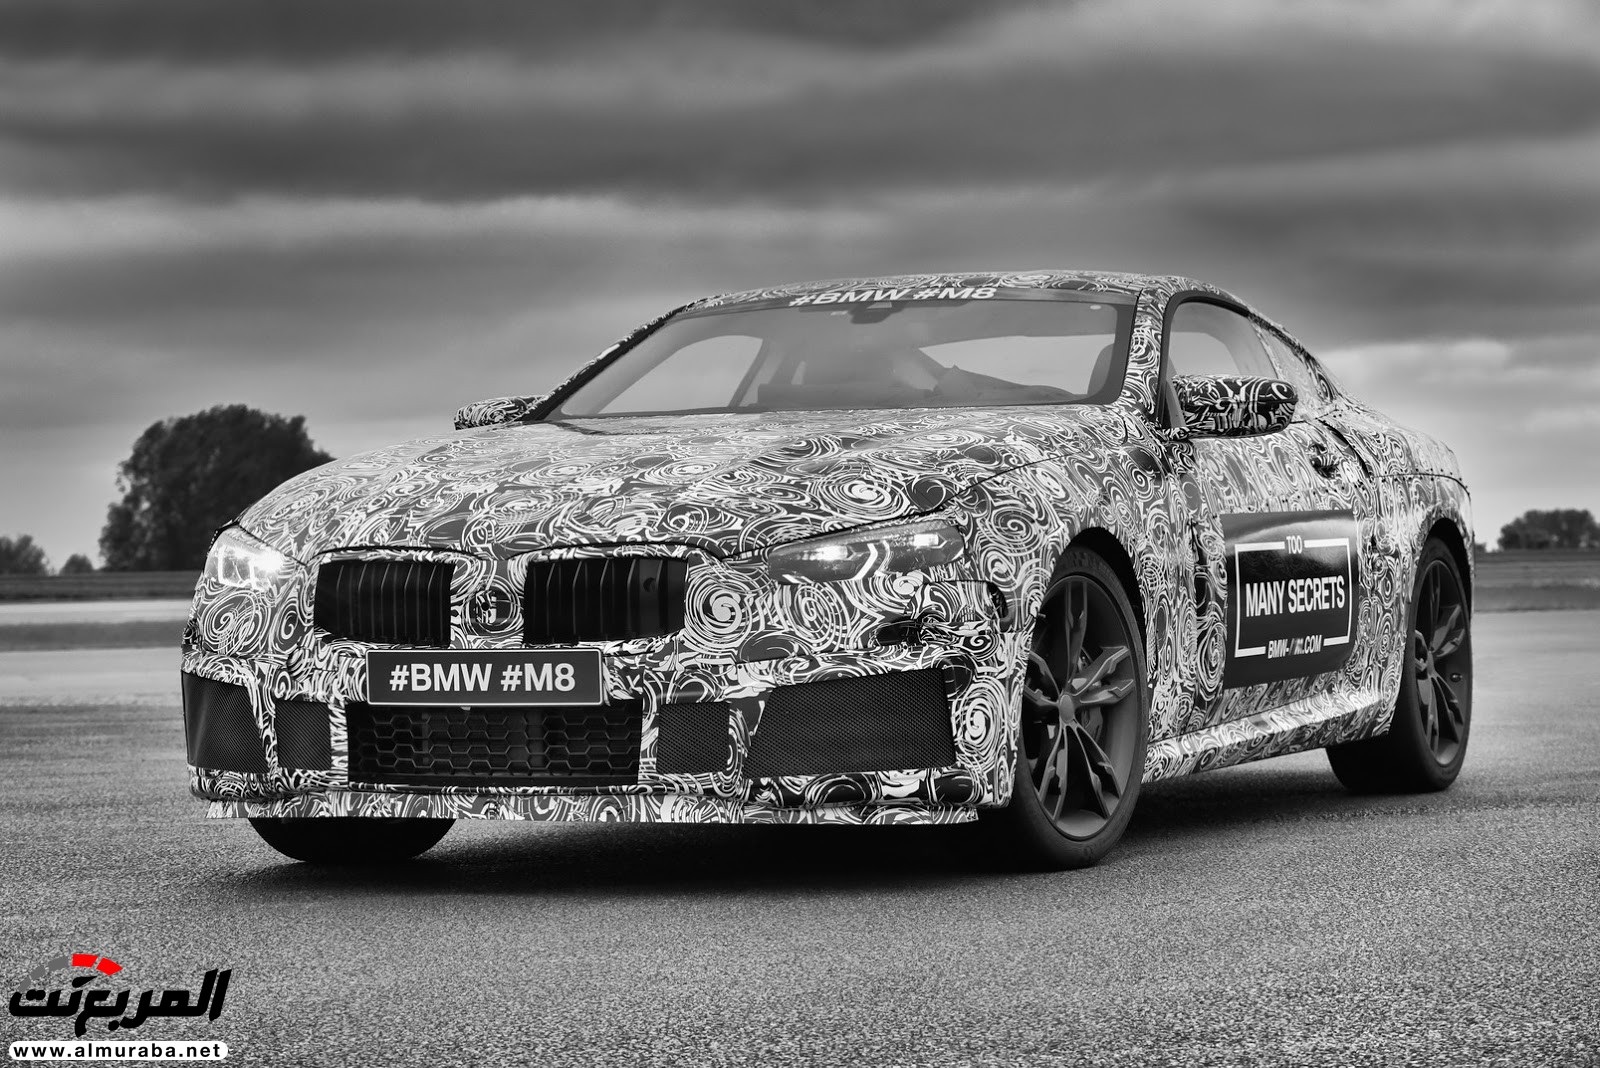 بي إم دبليو M8 يكشف عن نموذجها - وسيارة سباق الفئة الثامنة في الطريق 7